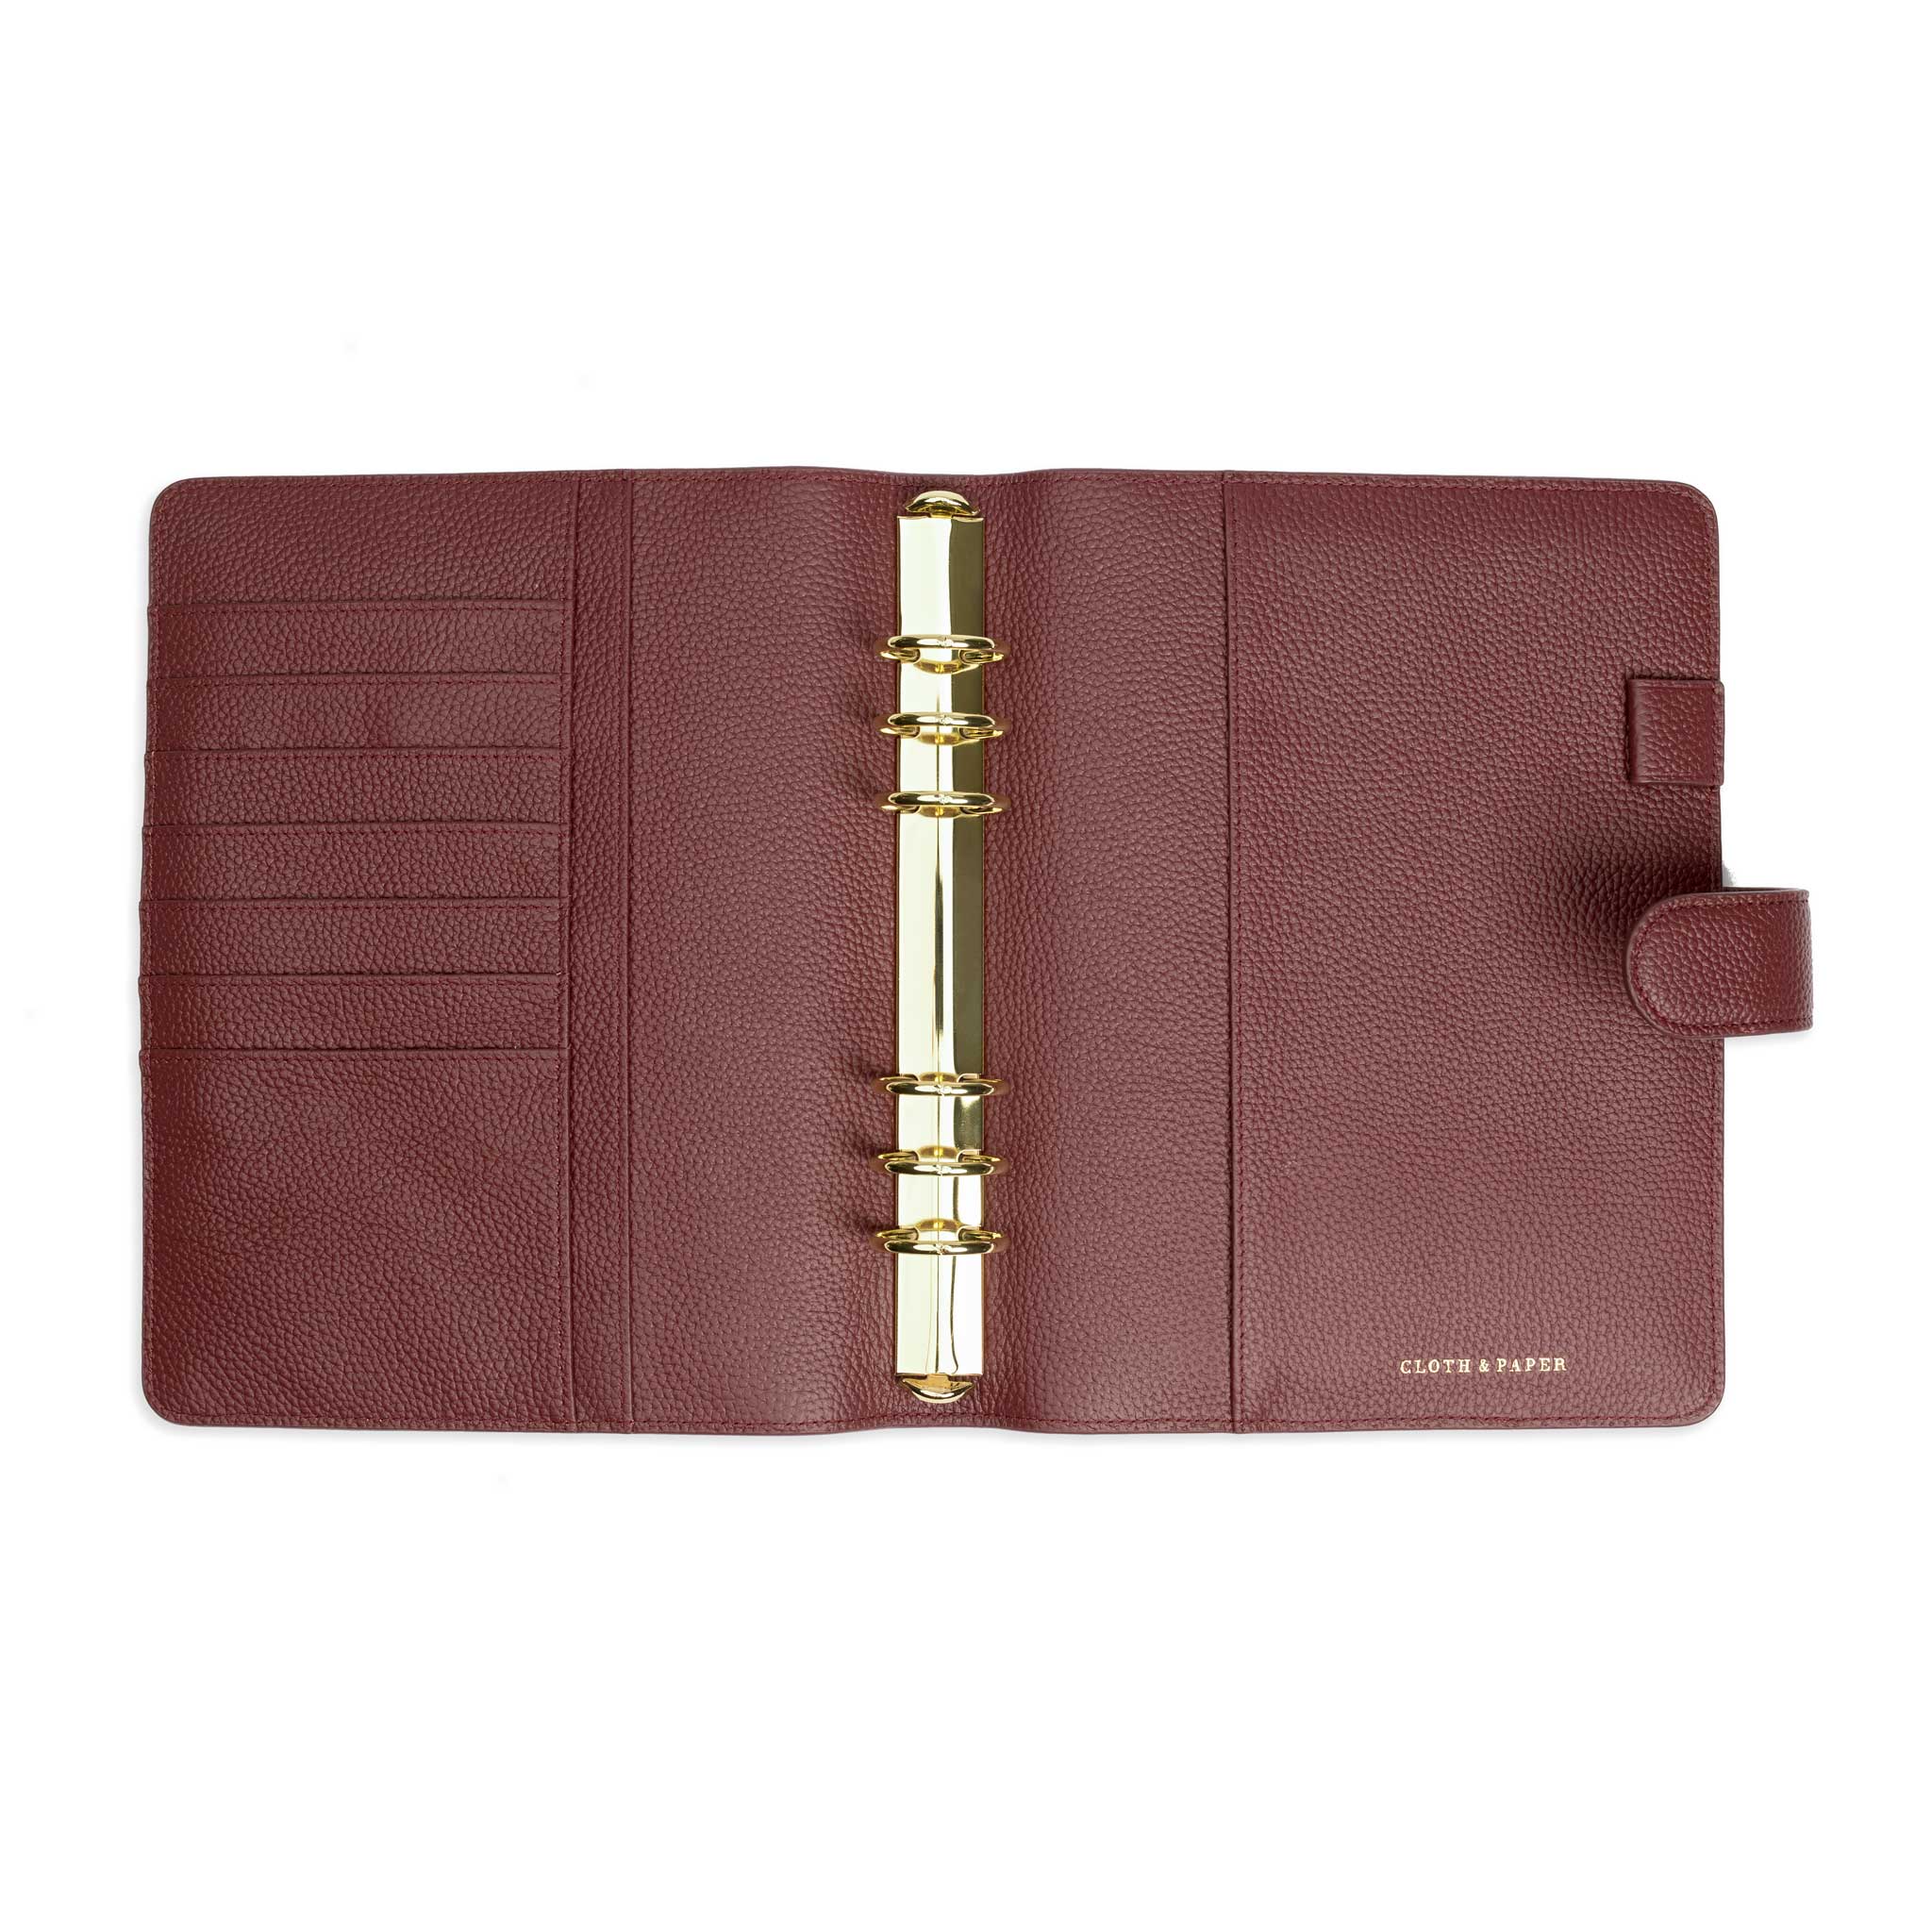 Louis Vuitton Zippy Wallet Unboxing & Review 